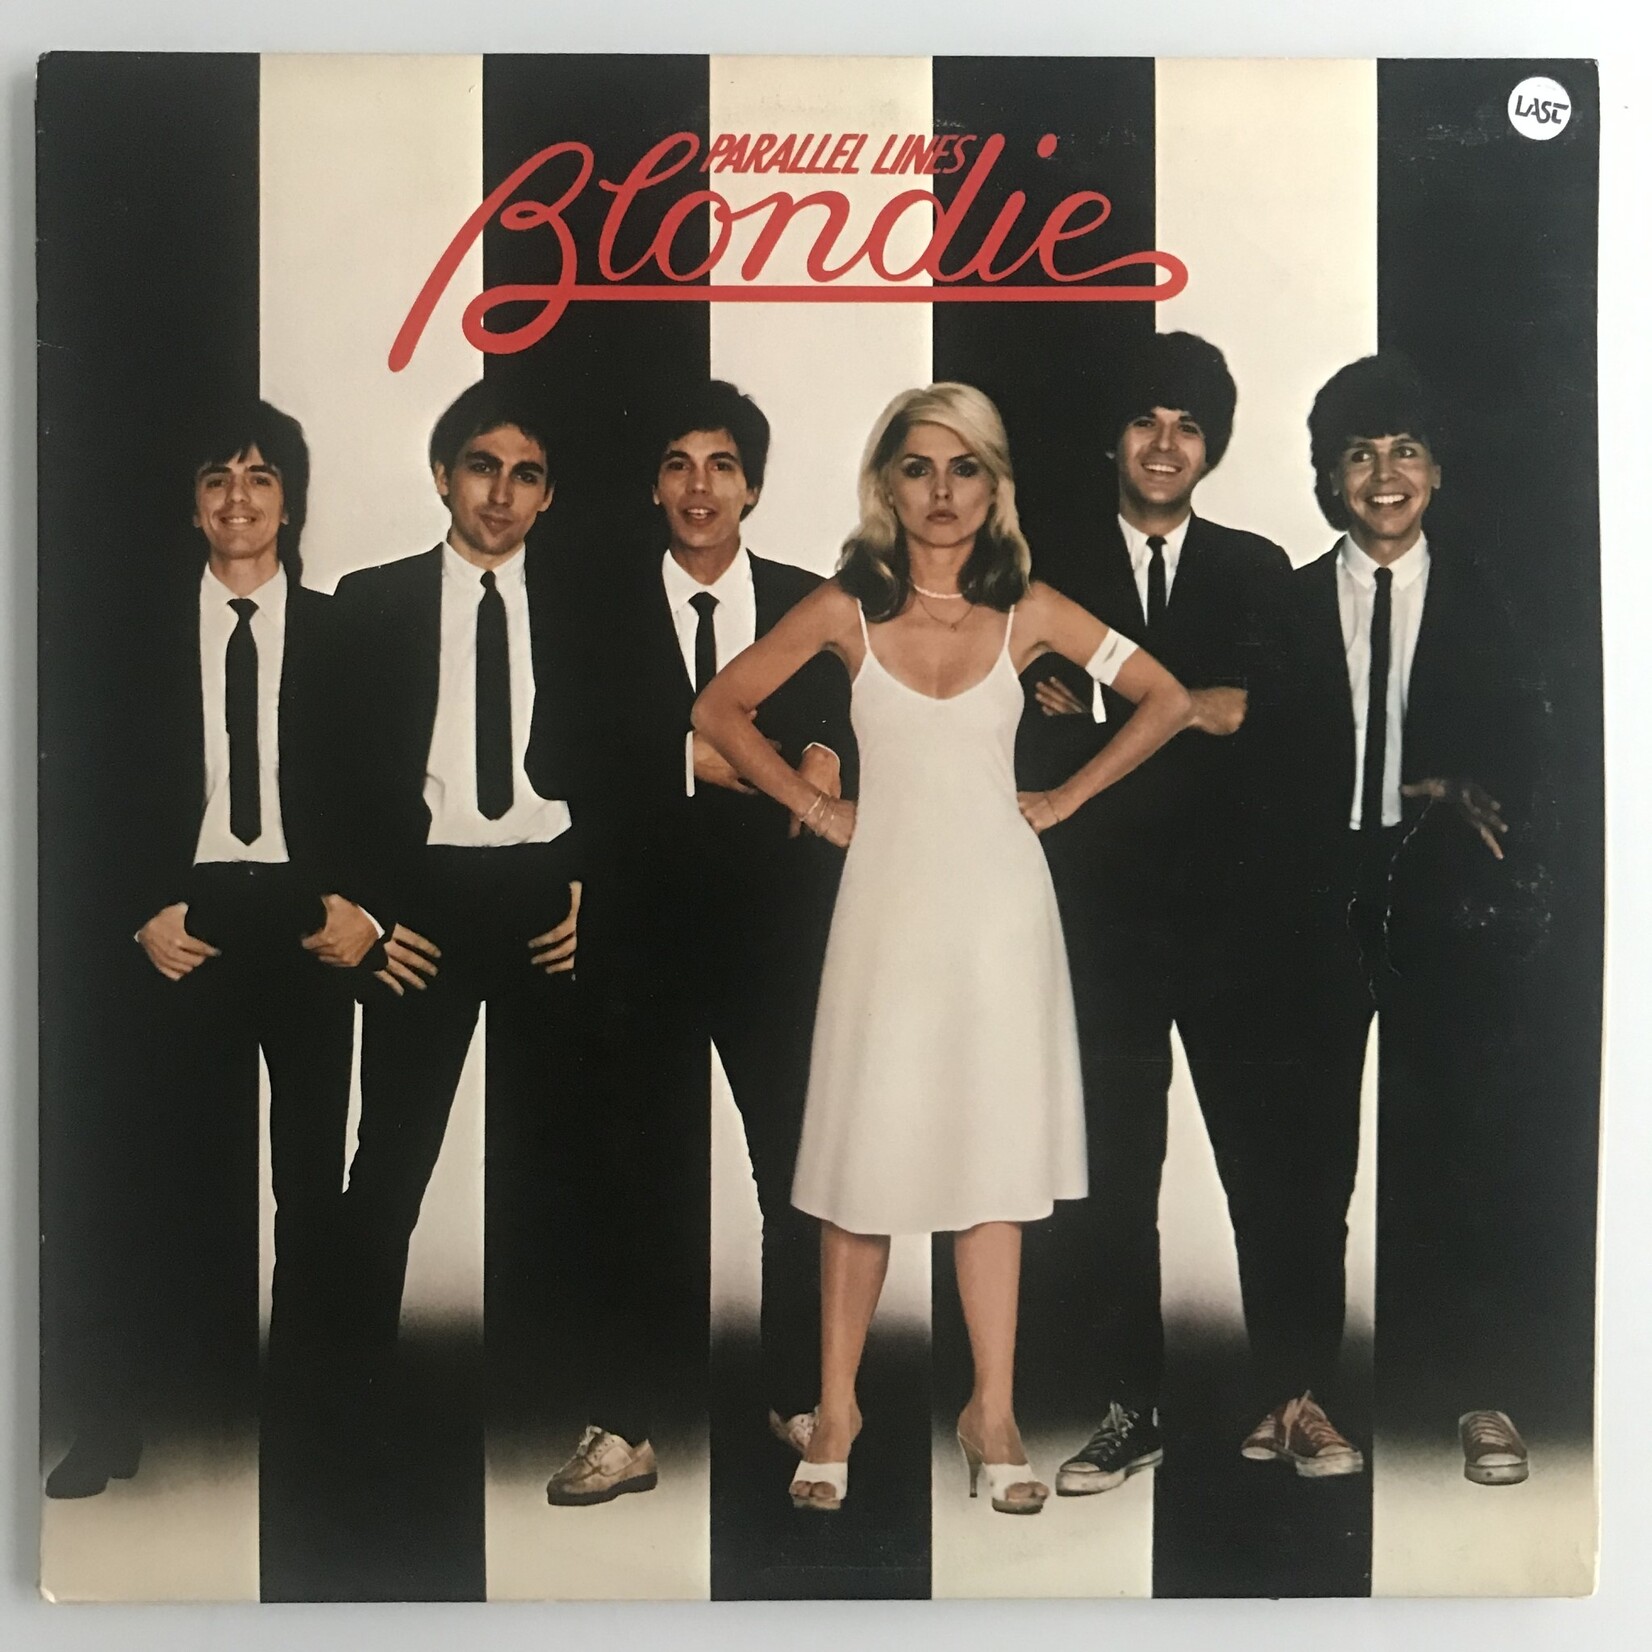 Blondie - Parallel Lines - CHR 1192 - Vinyl LP (USED)